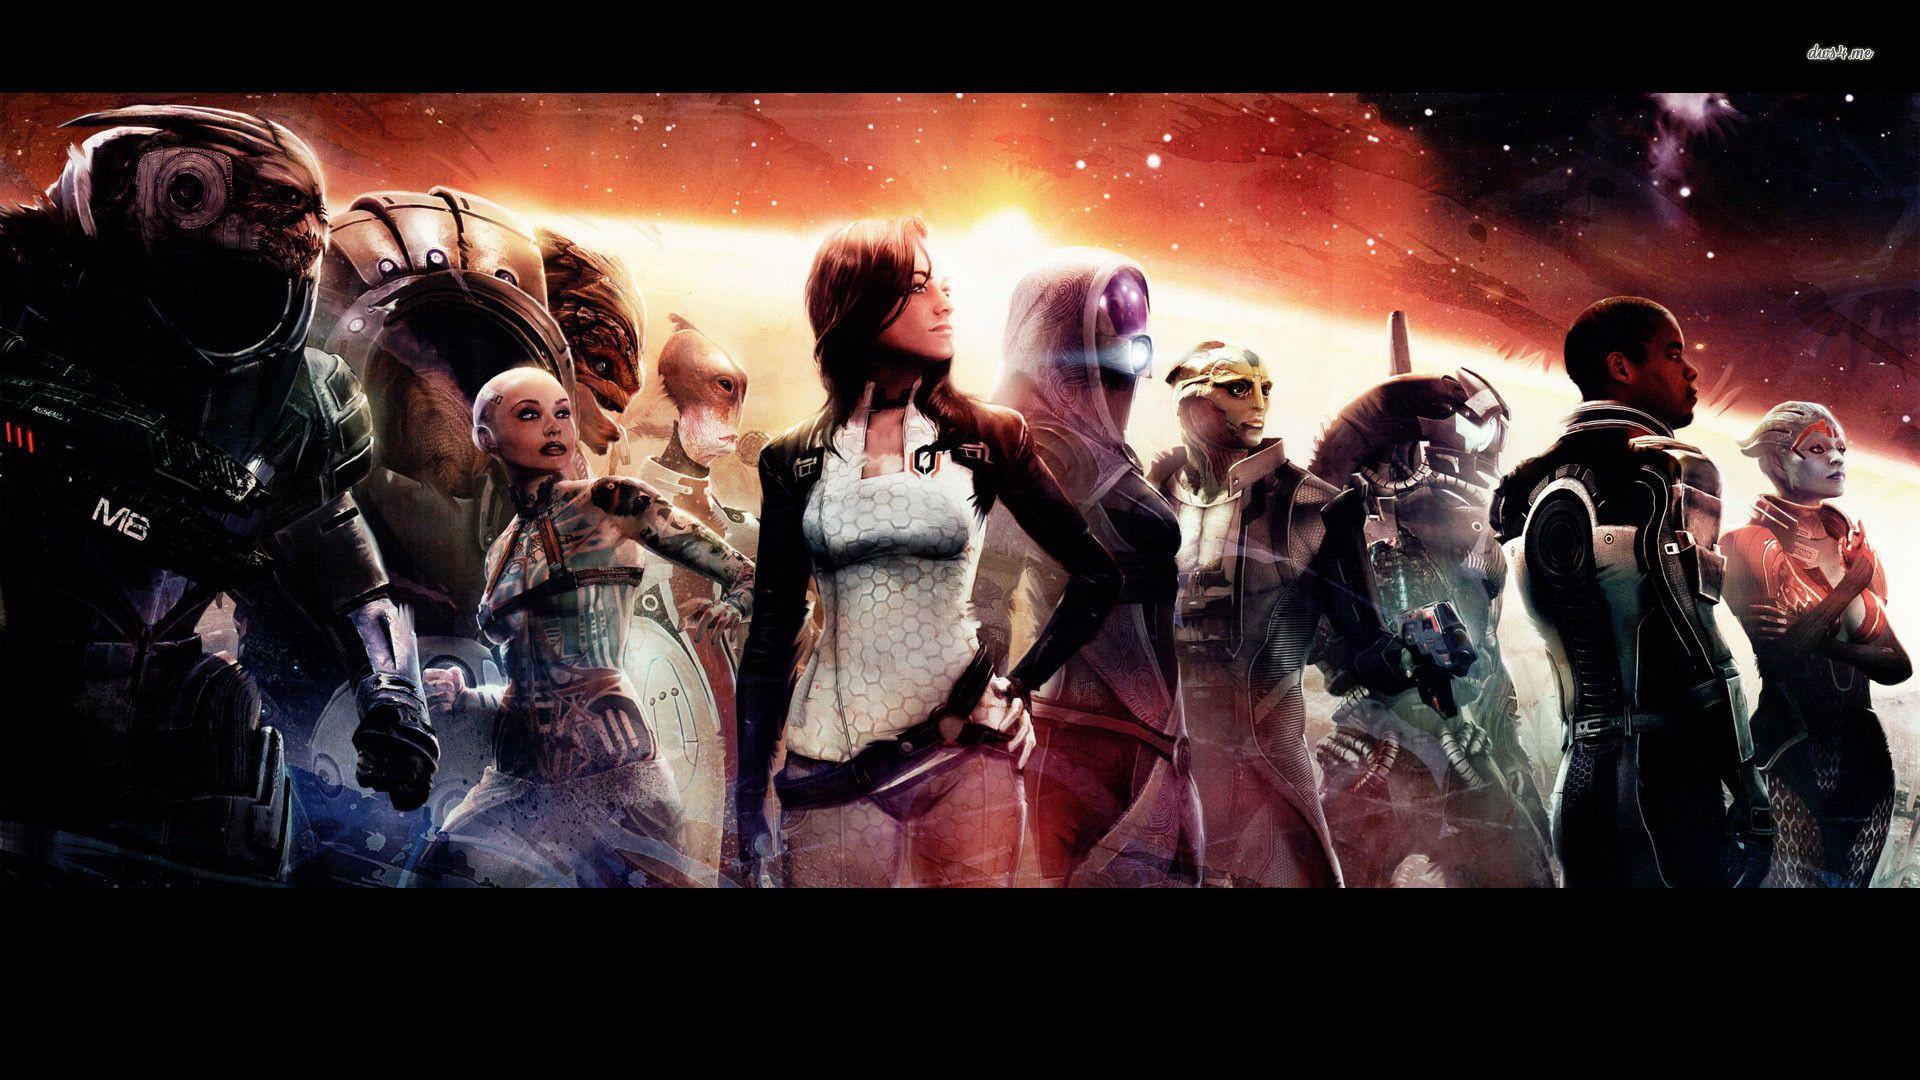 Mass Effect 2 wallpaper wallpaper - #